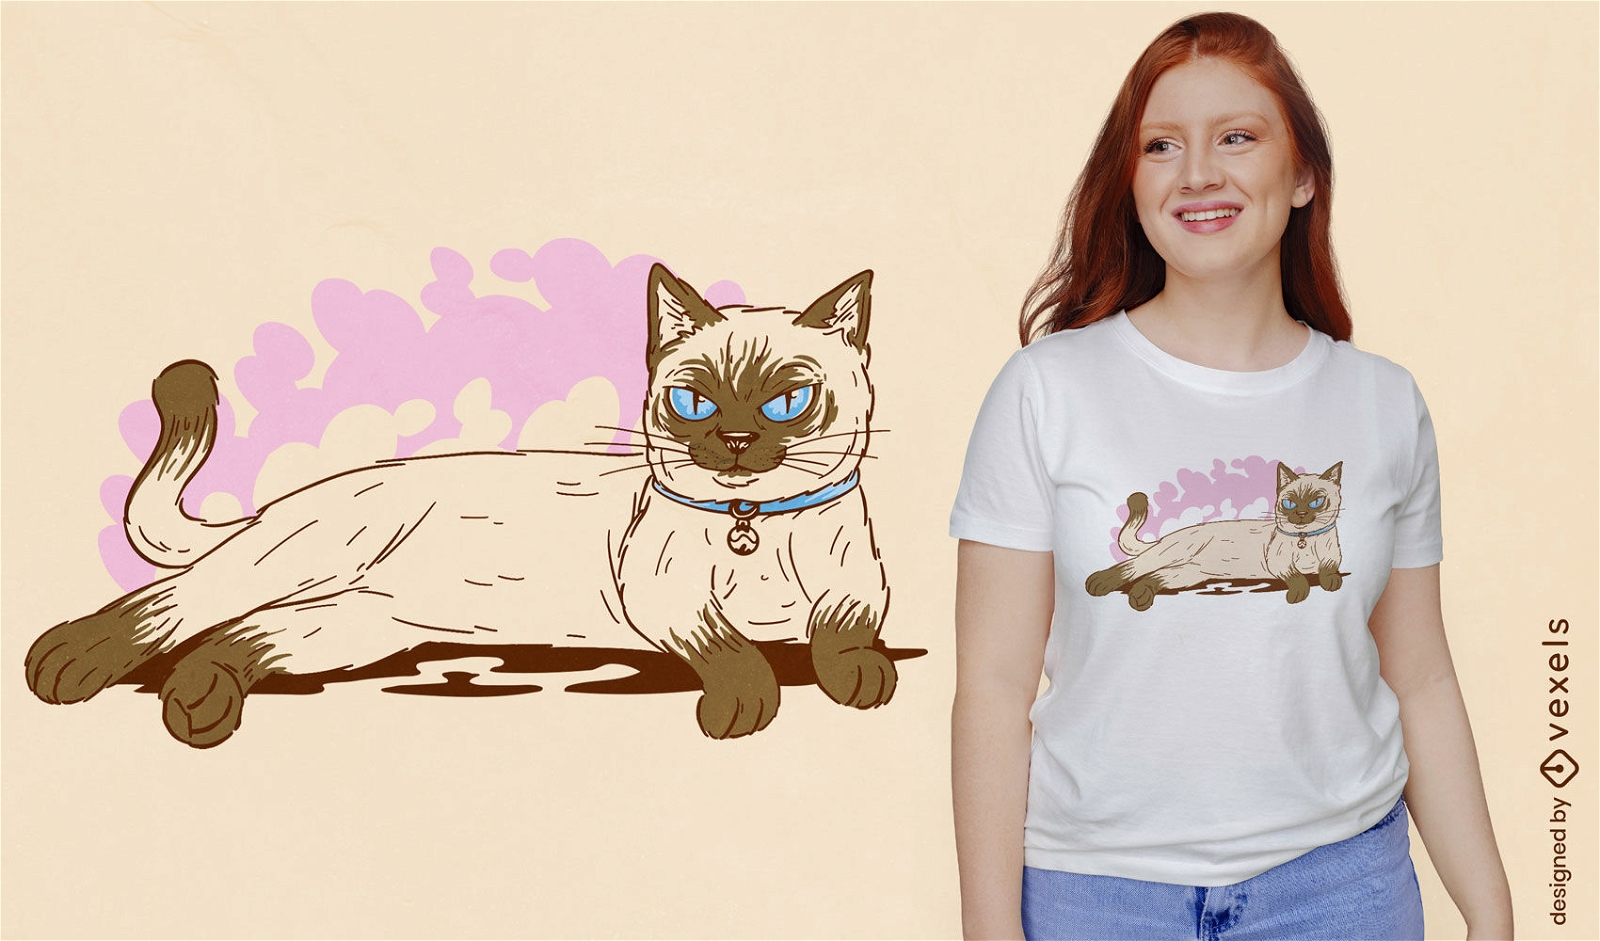 Ruhender T-Shirt Entwurf des Tiers der siamesischen Katze